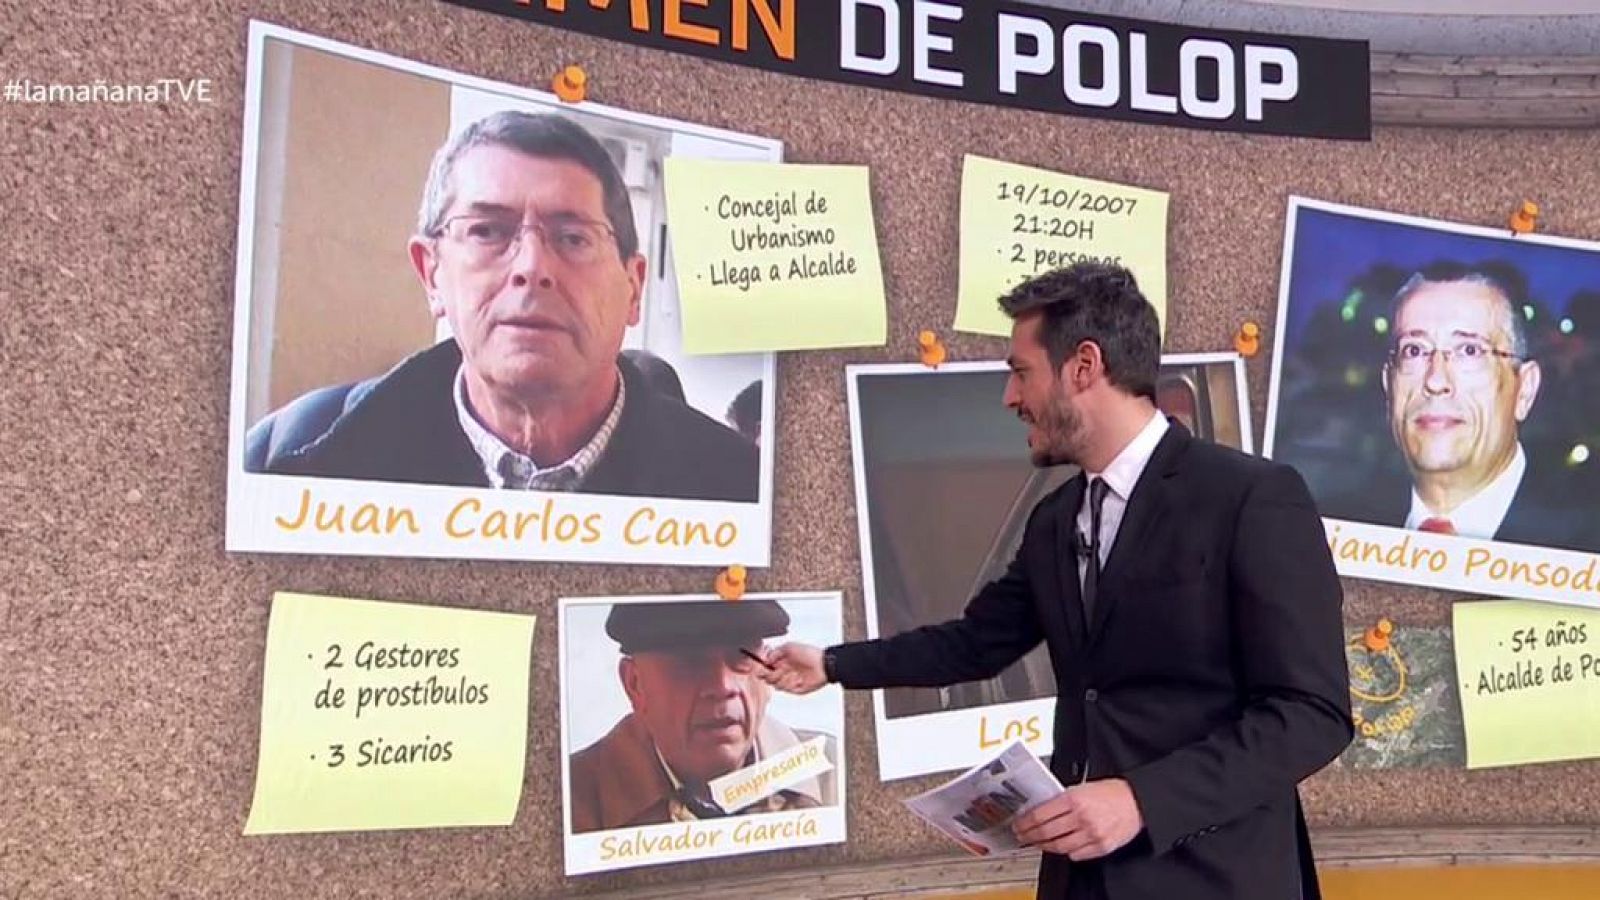 Las claves del crimen de Polop - RTVE.es